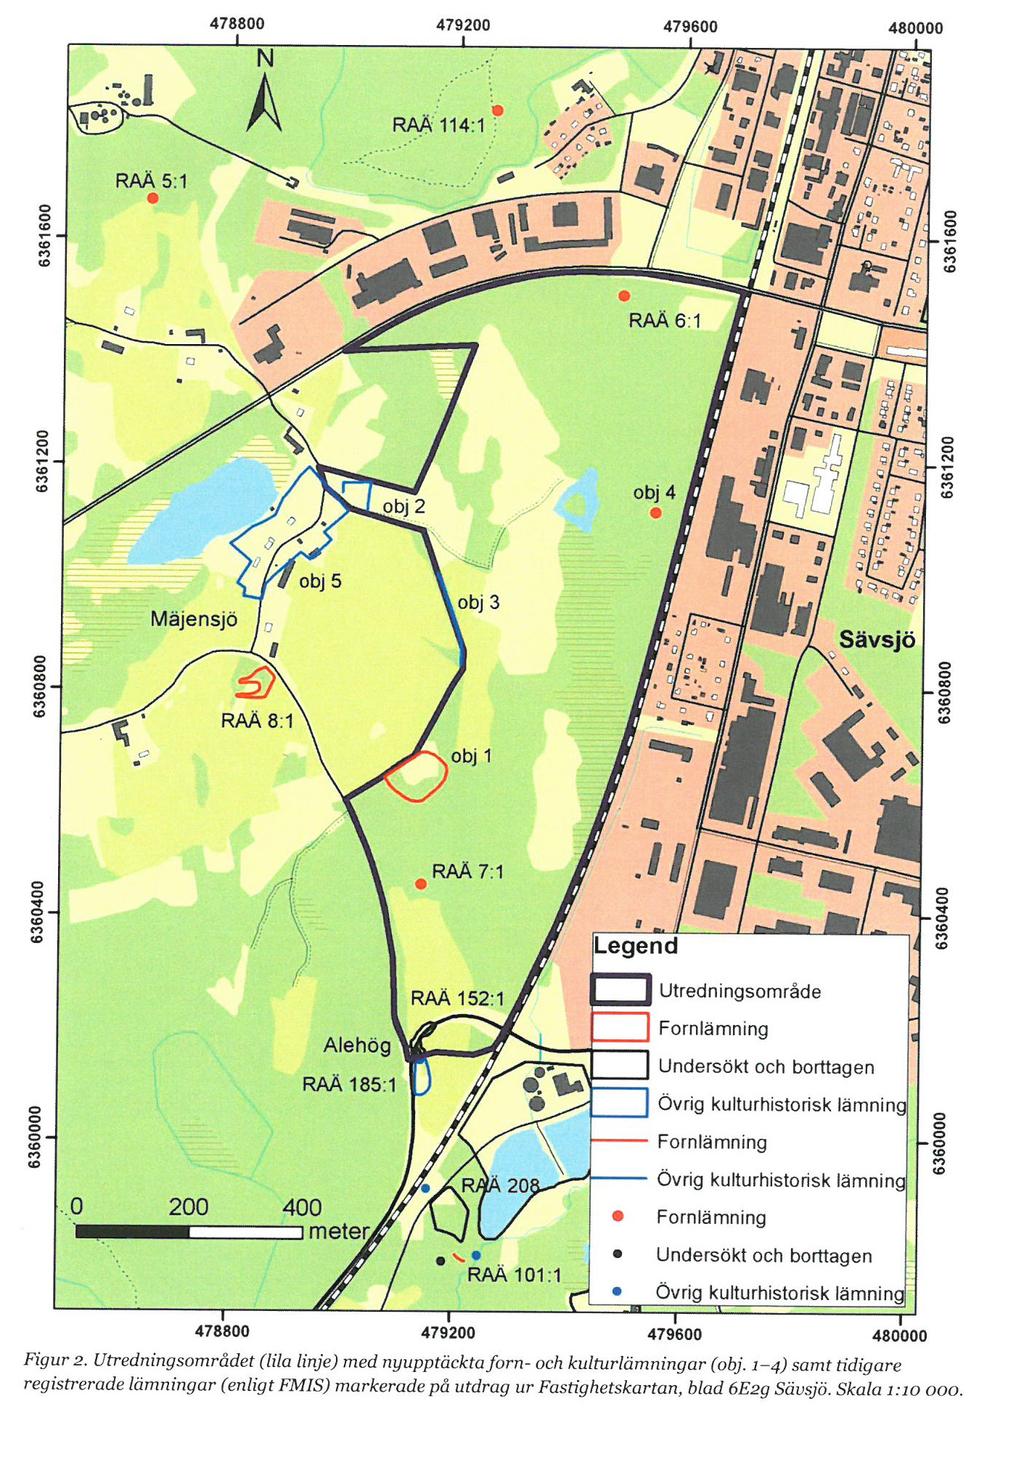 Arkeologi En arkeologisk utredning, etapp 1 (rapport 2017:157), har genomförts i området. Tre utpekade områden finns i närområdet av aktuellt planområde.